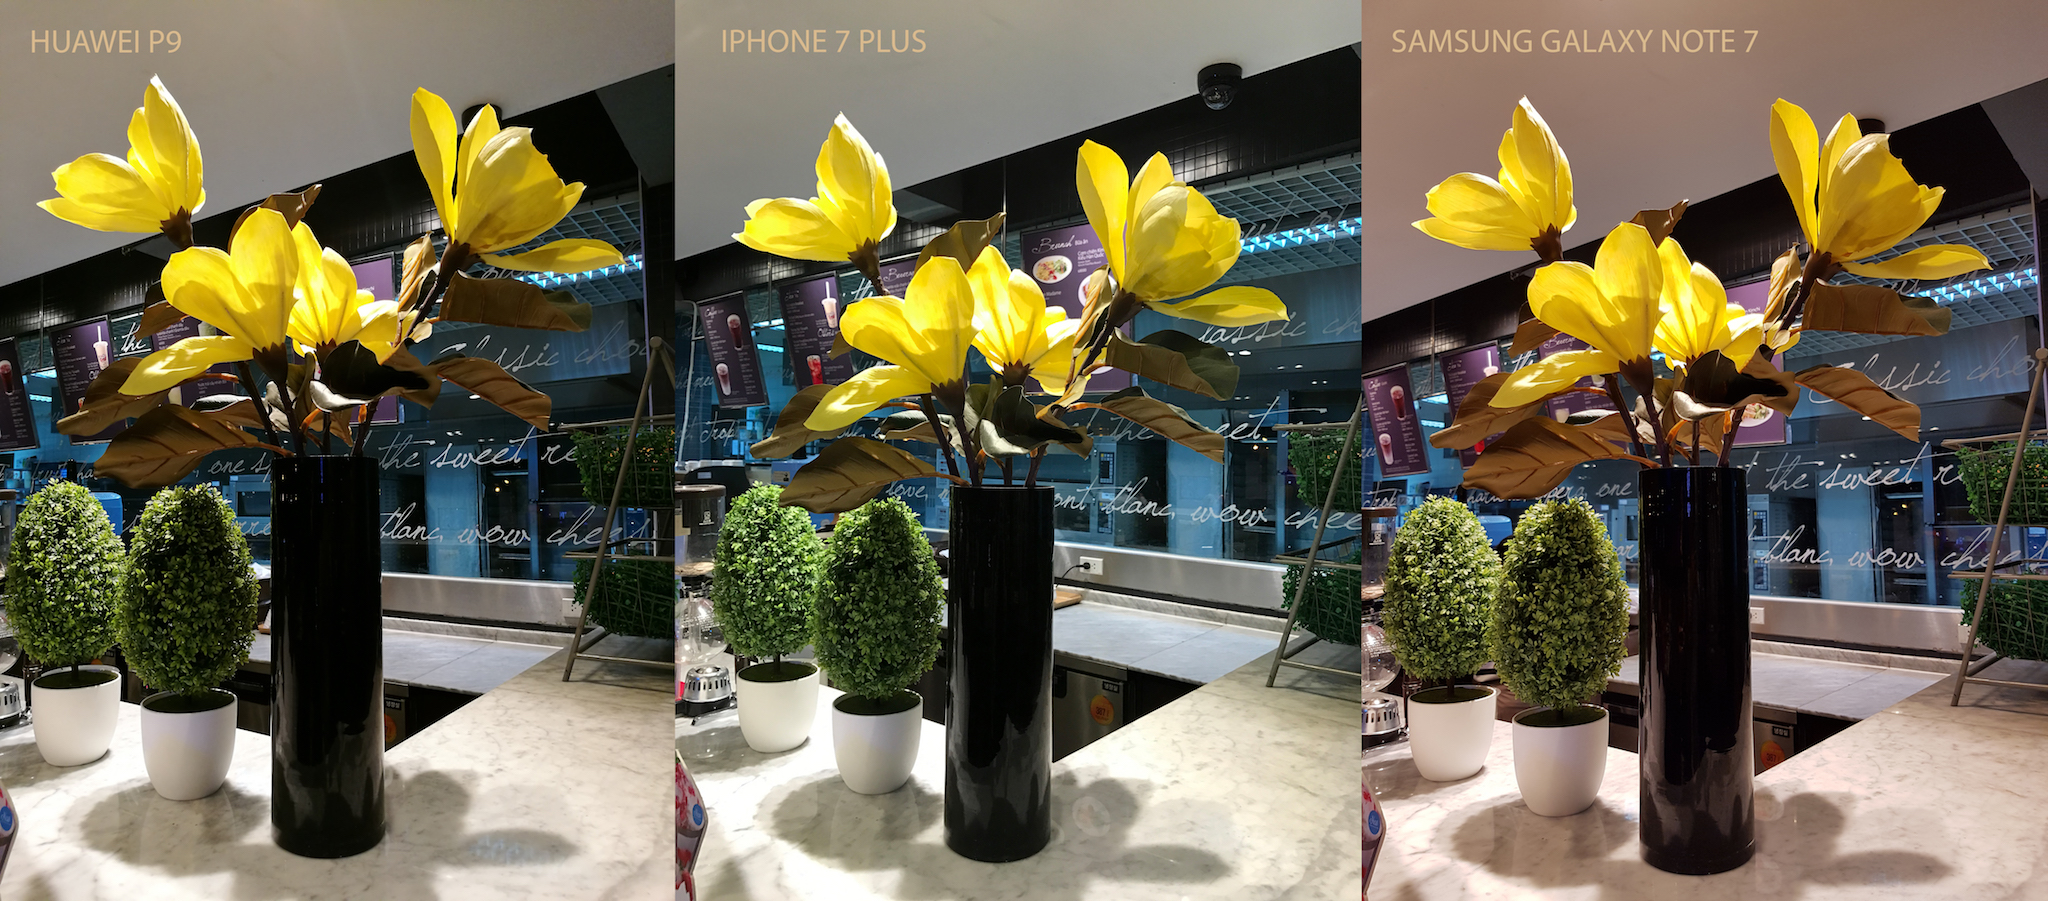 Xem thử ảnh chụp giữa Huawei P9, iPhone 7 Plus và Galaxy Note7